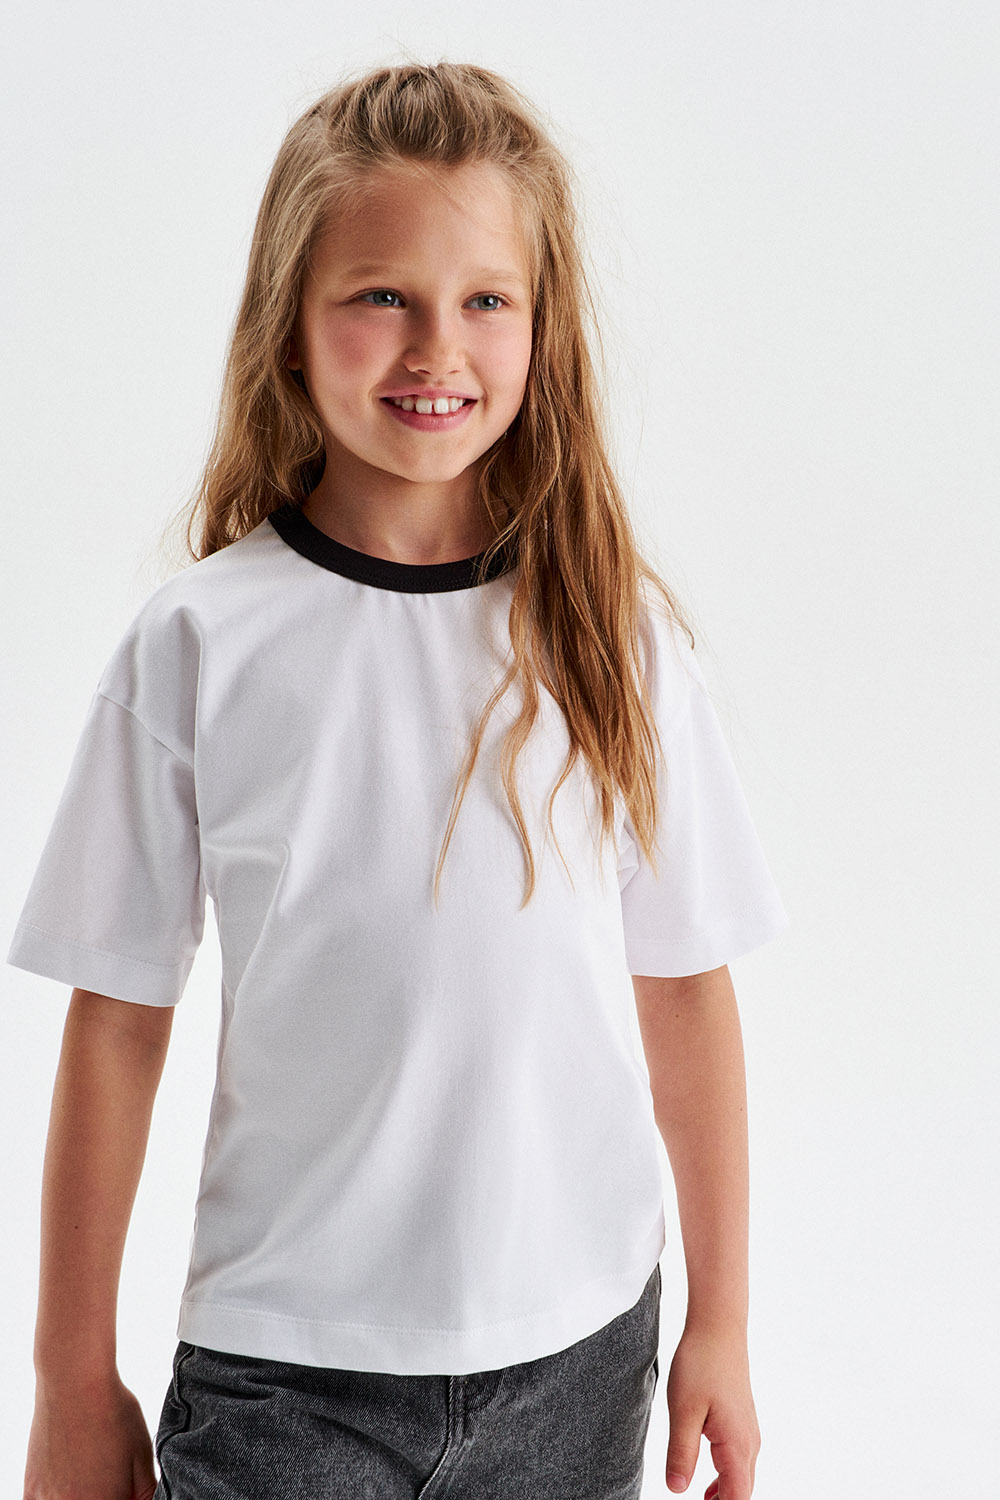 Хлопковая футболка с контрастной отделкой (SSLSG-428-28402-200) Silver spoon